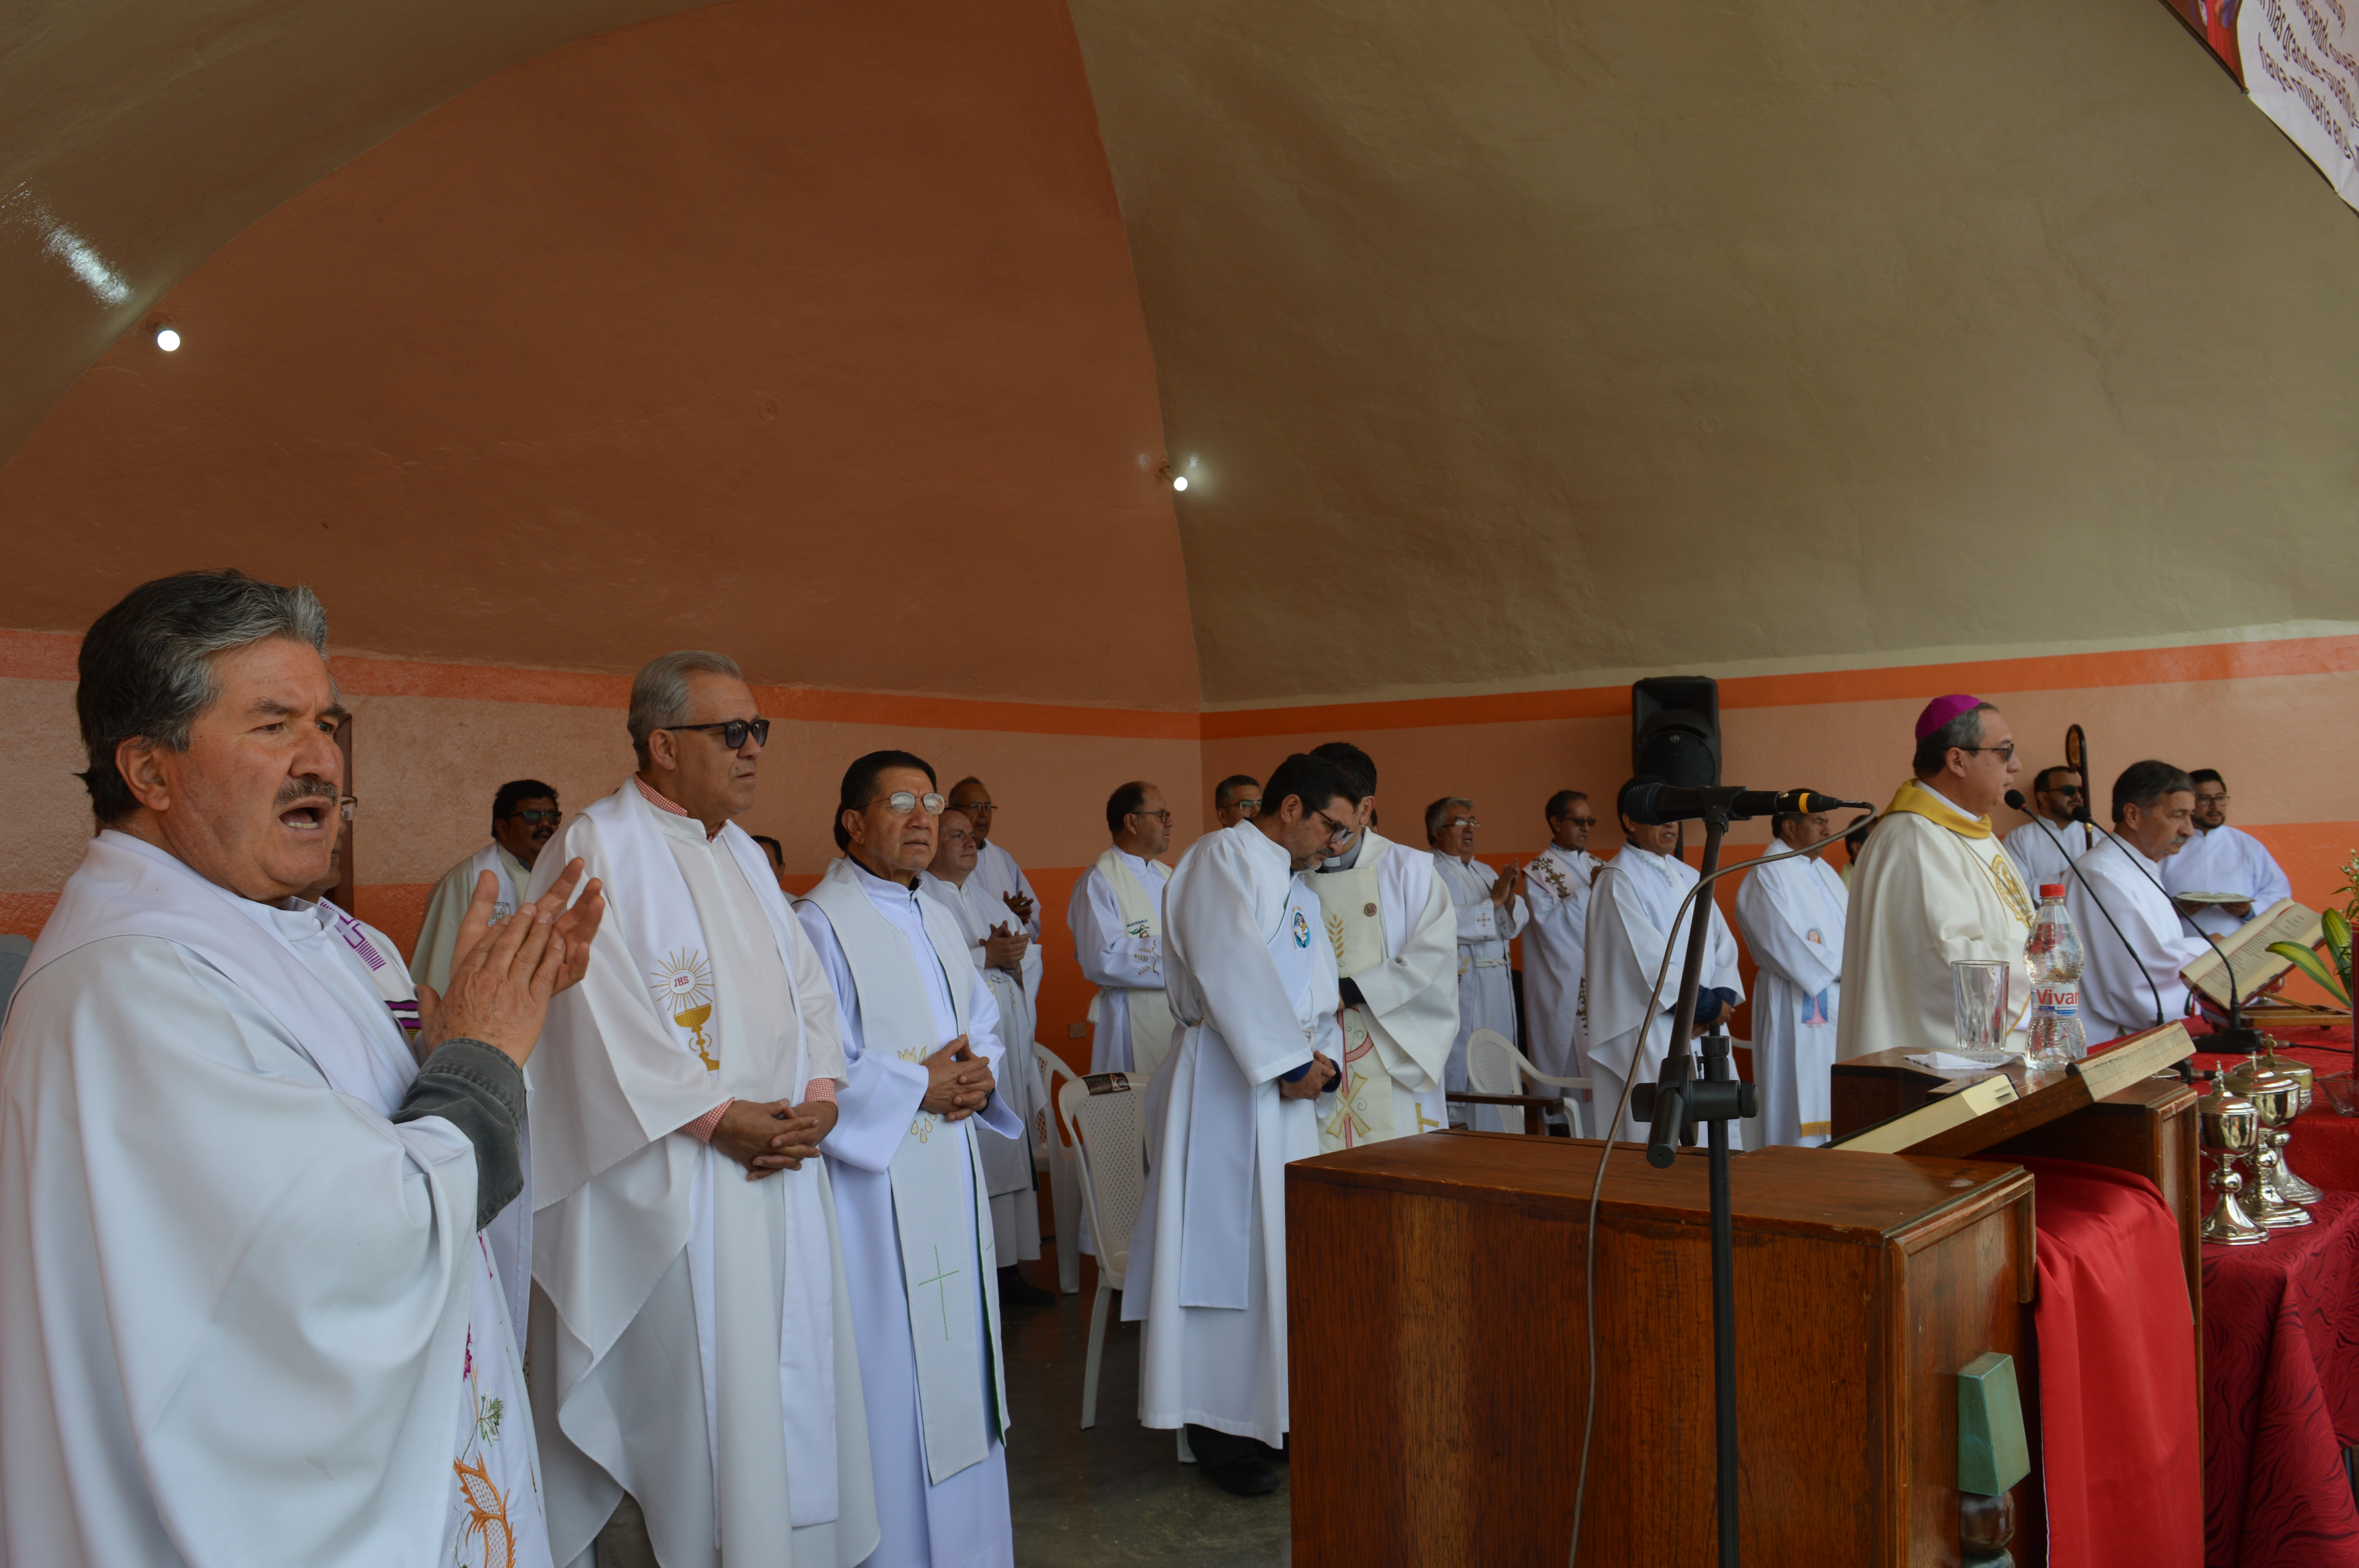 Encuentro de comunidades en Andacocha